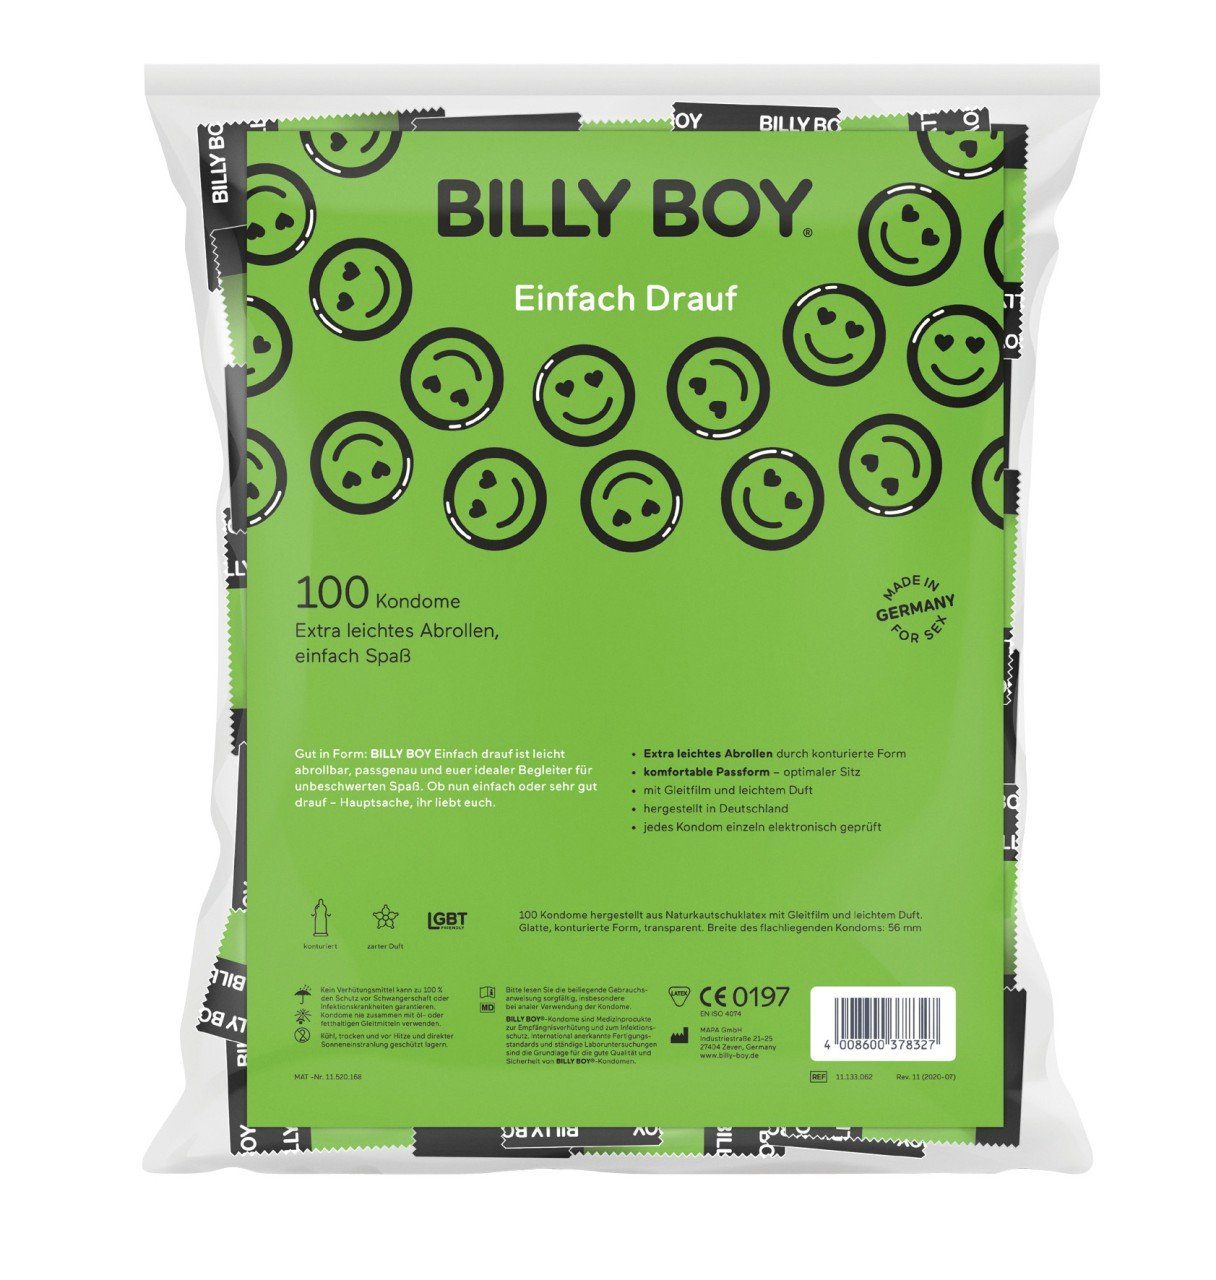 Boy 100er Einhand-Kondome BOY Billy Drauf Btl. BILLY Einfach